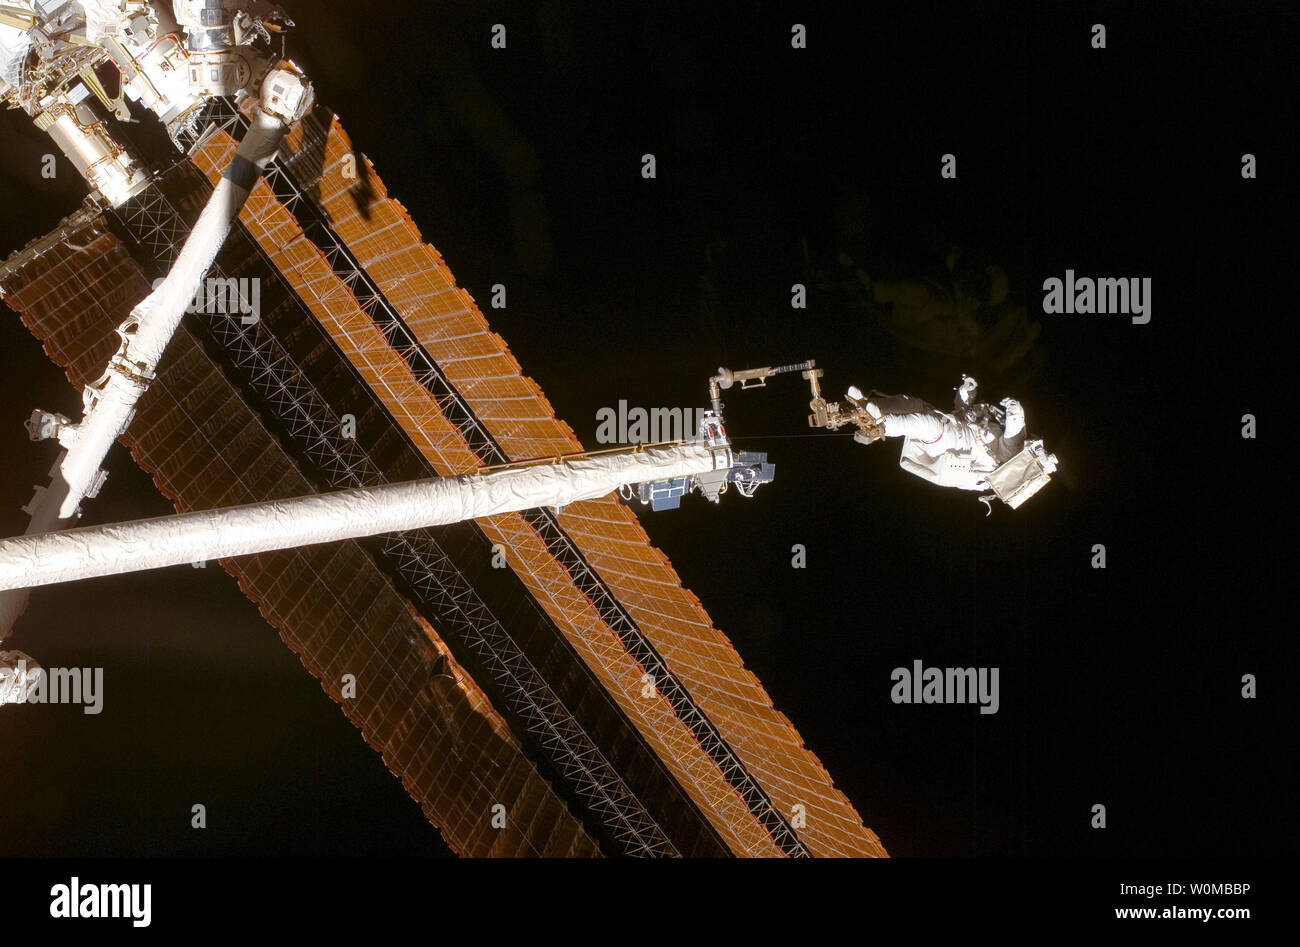 Während sie mit einem Fuß Zurückhaltung verankert am Ende des Orbiter Boom Sensor System (OBSS), Astronaut Scott Parazynski, STS-120 Mission Specialist, bewertet seine Reparatur arbeiten wie der solar array vollständig während der vierten Sitzung der Mission für Extra Vehicular Activity (EVA) während der Space Shuttle Discovery ist mit der Internationalen Raumstation am 3. November 2007 angedockt bereitgestellt wird. Während der 7-Stunden-, 19-minütigen Spacewalk, Parazynski eine Snagged Kabel installiert und hausgemachte Stabilisatoren entwickelt, um die beschädigte Struktur und Stabilität von solar array in der Nähe der Schäden zu stärken. Astronaut Doug Whe Stockfoto